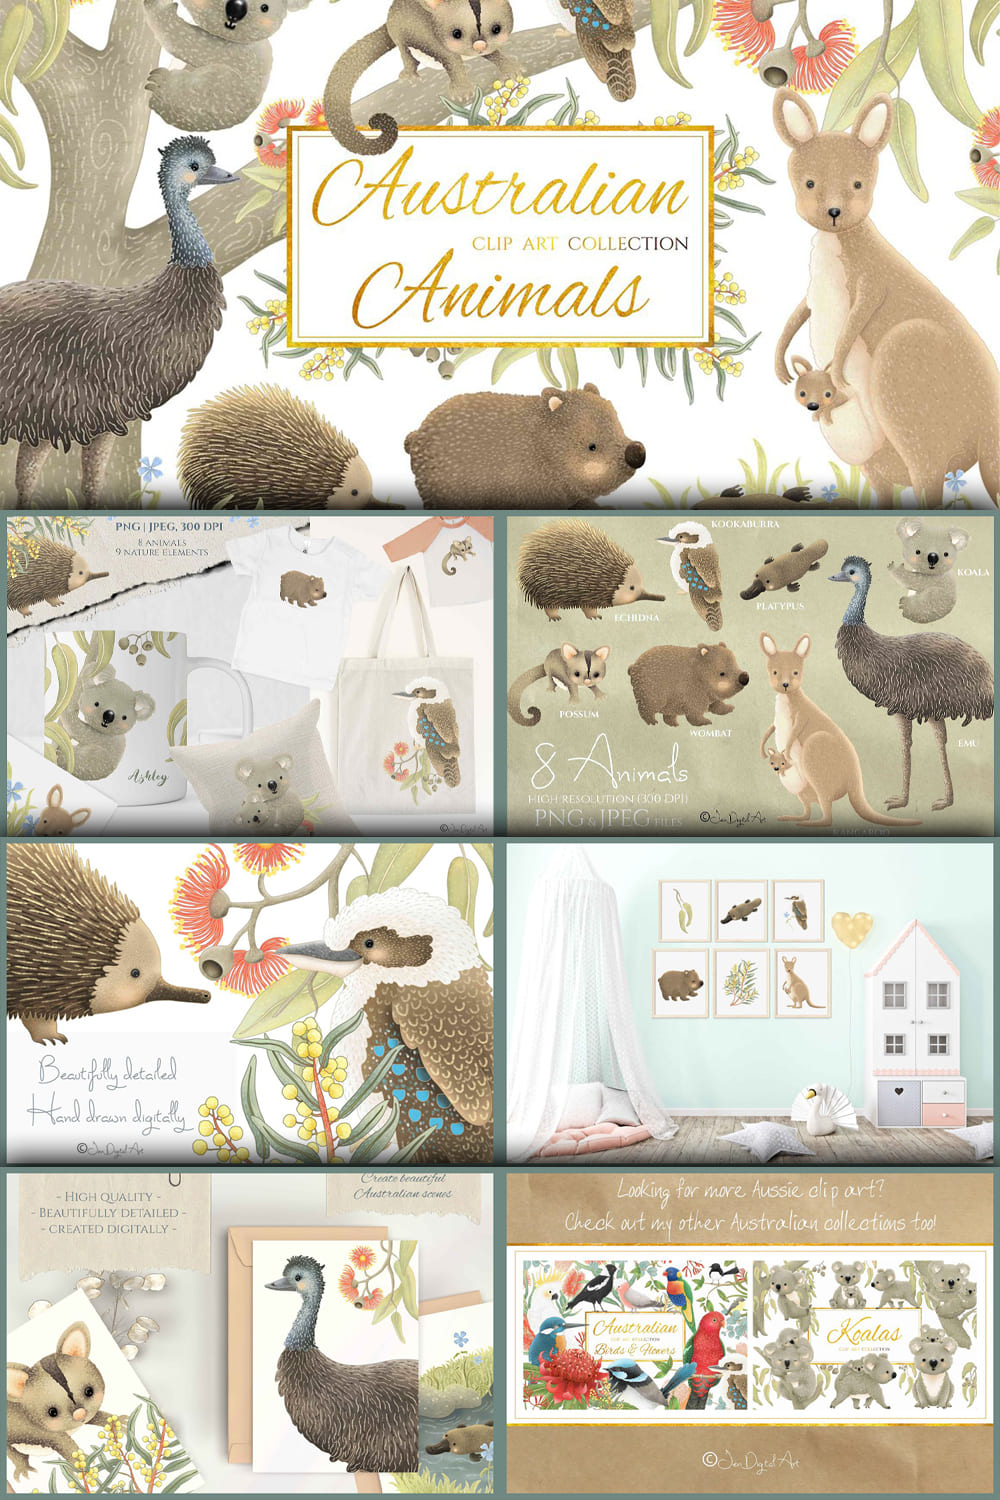 Australian Animals Collection - Pinterest.